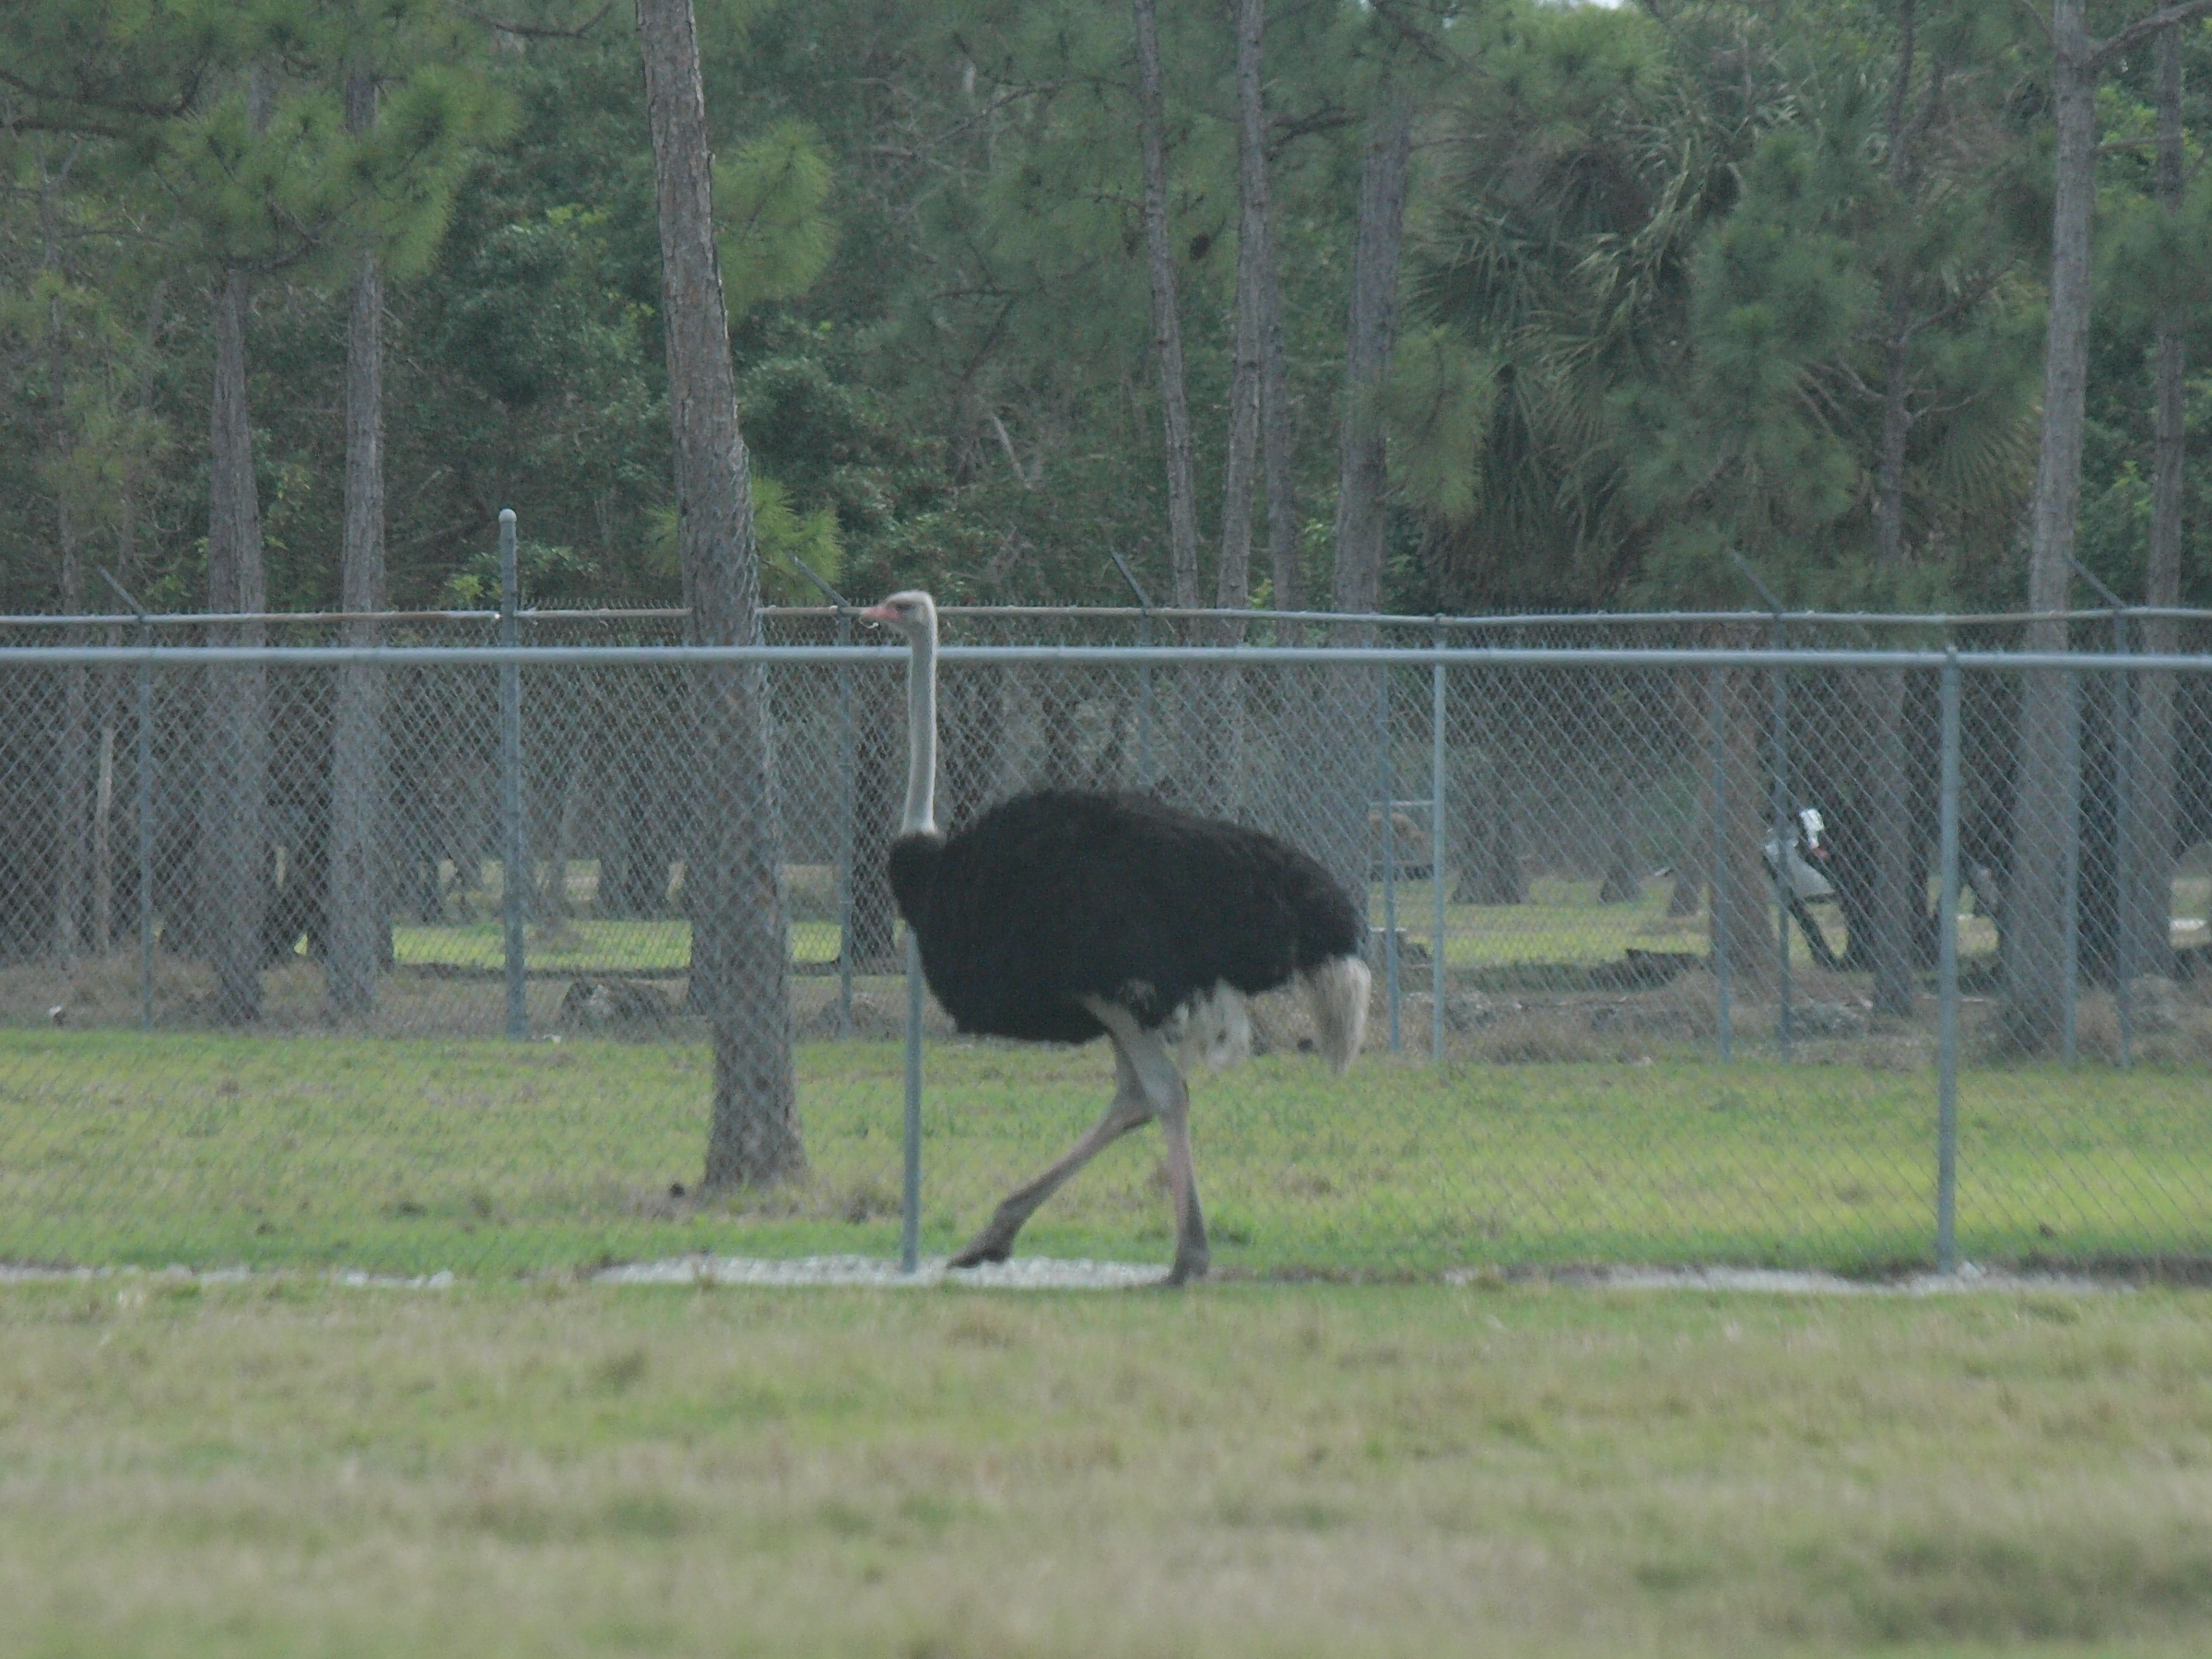 Ostrich #5